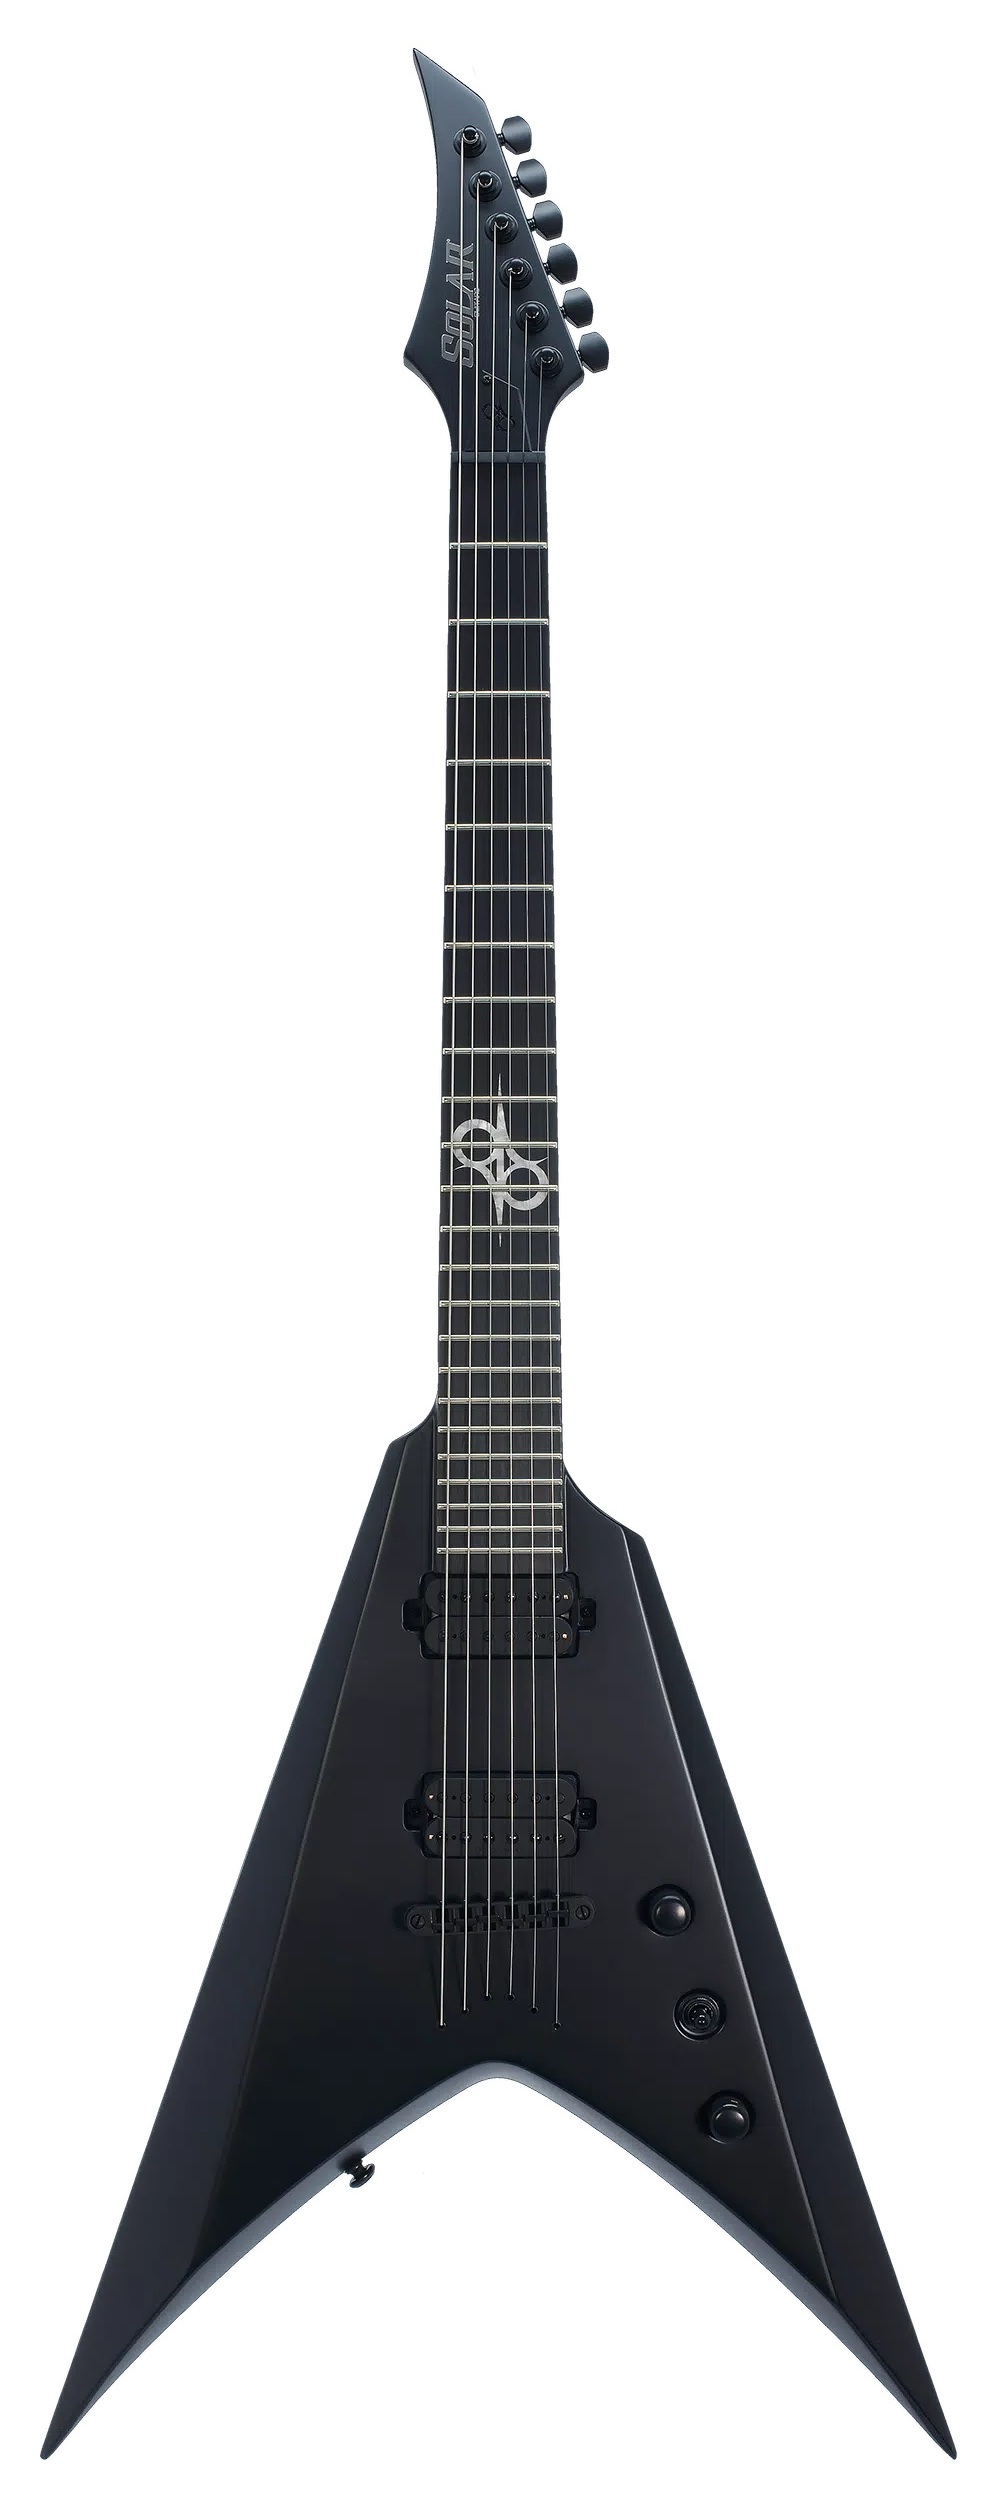 Электрогитары Solar Guitars V2.6C (чехол в комплекте) электрогитары cort kx700 evertune opbk чехол в комплекте